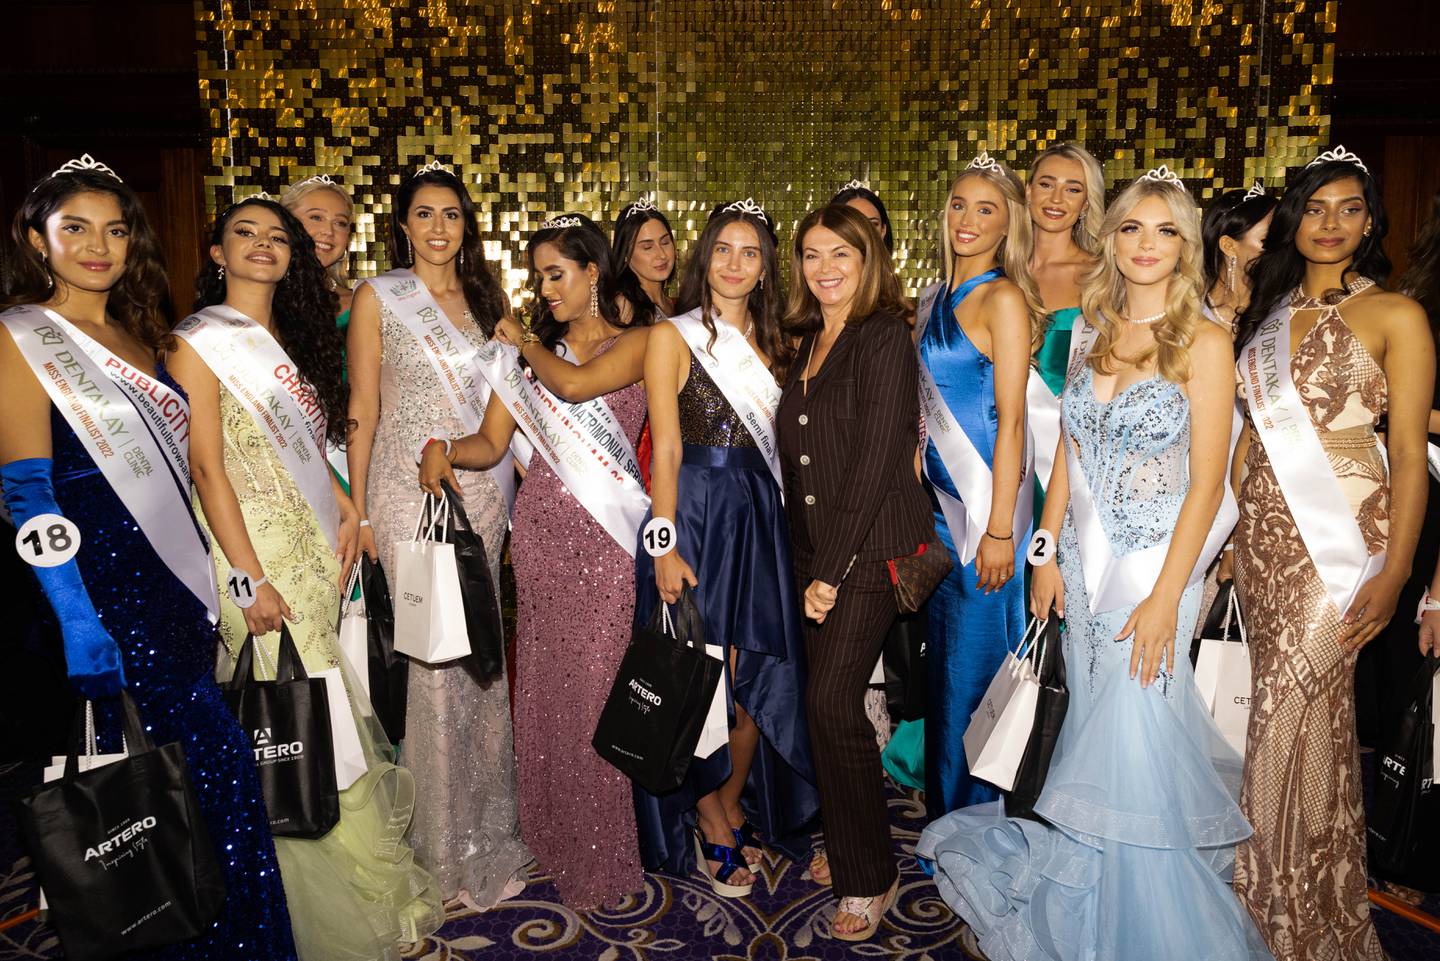 Angie Beasley, directrice de Miss Angleterre, avec la finaliste Melisa Raouf et d'autres candidats au Taj 51 Buckingham Gate à Londres.  Photo: Kam Murali